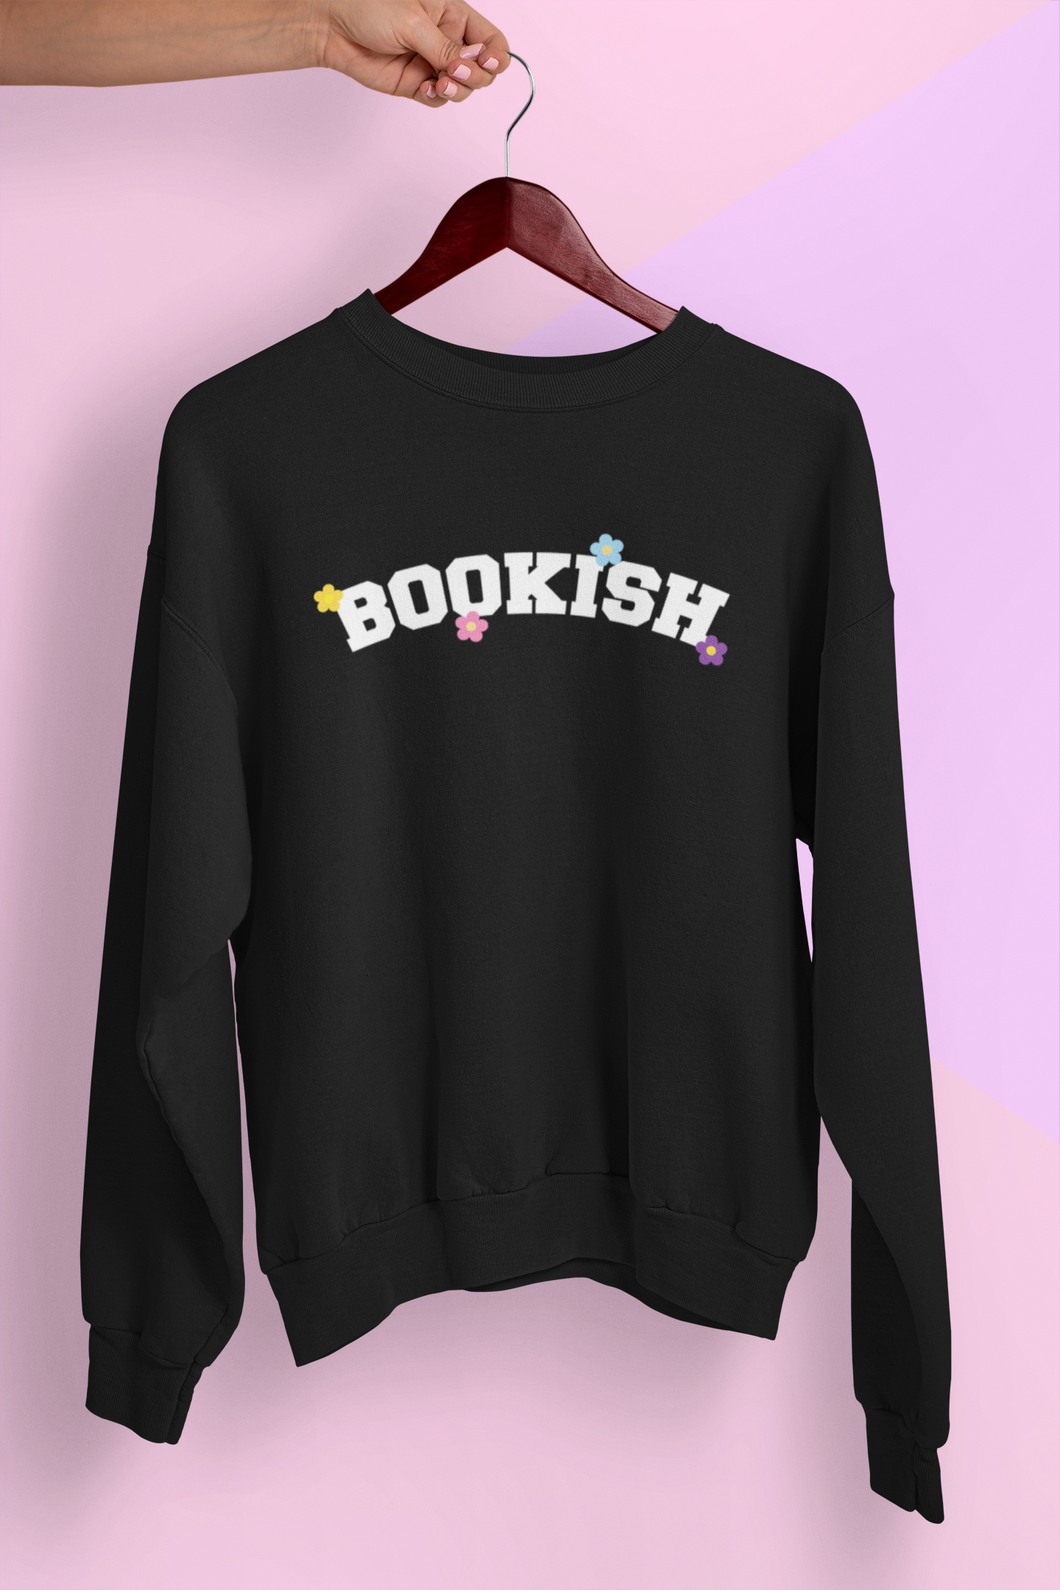 Sweatshirt: Bookish!